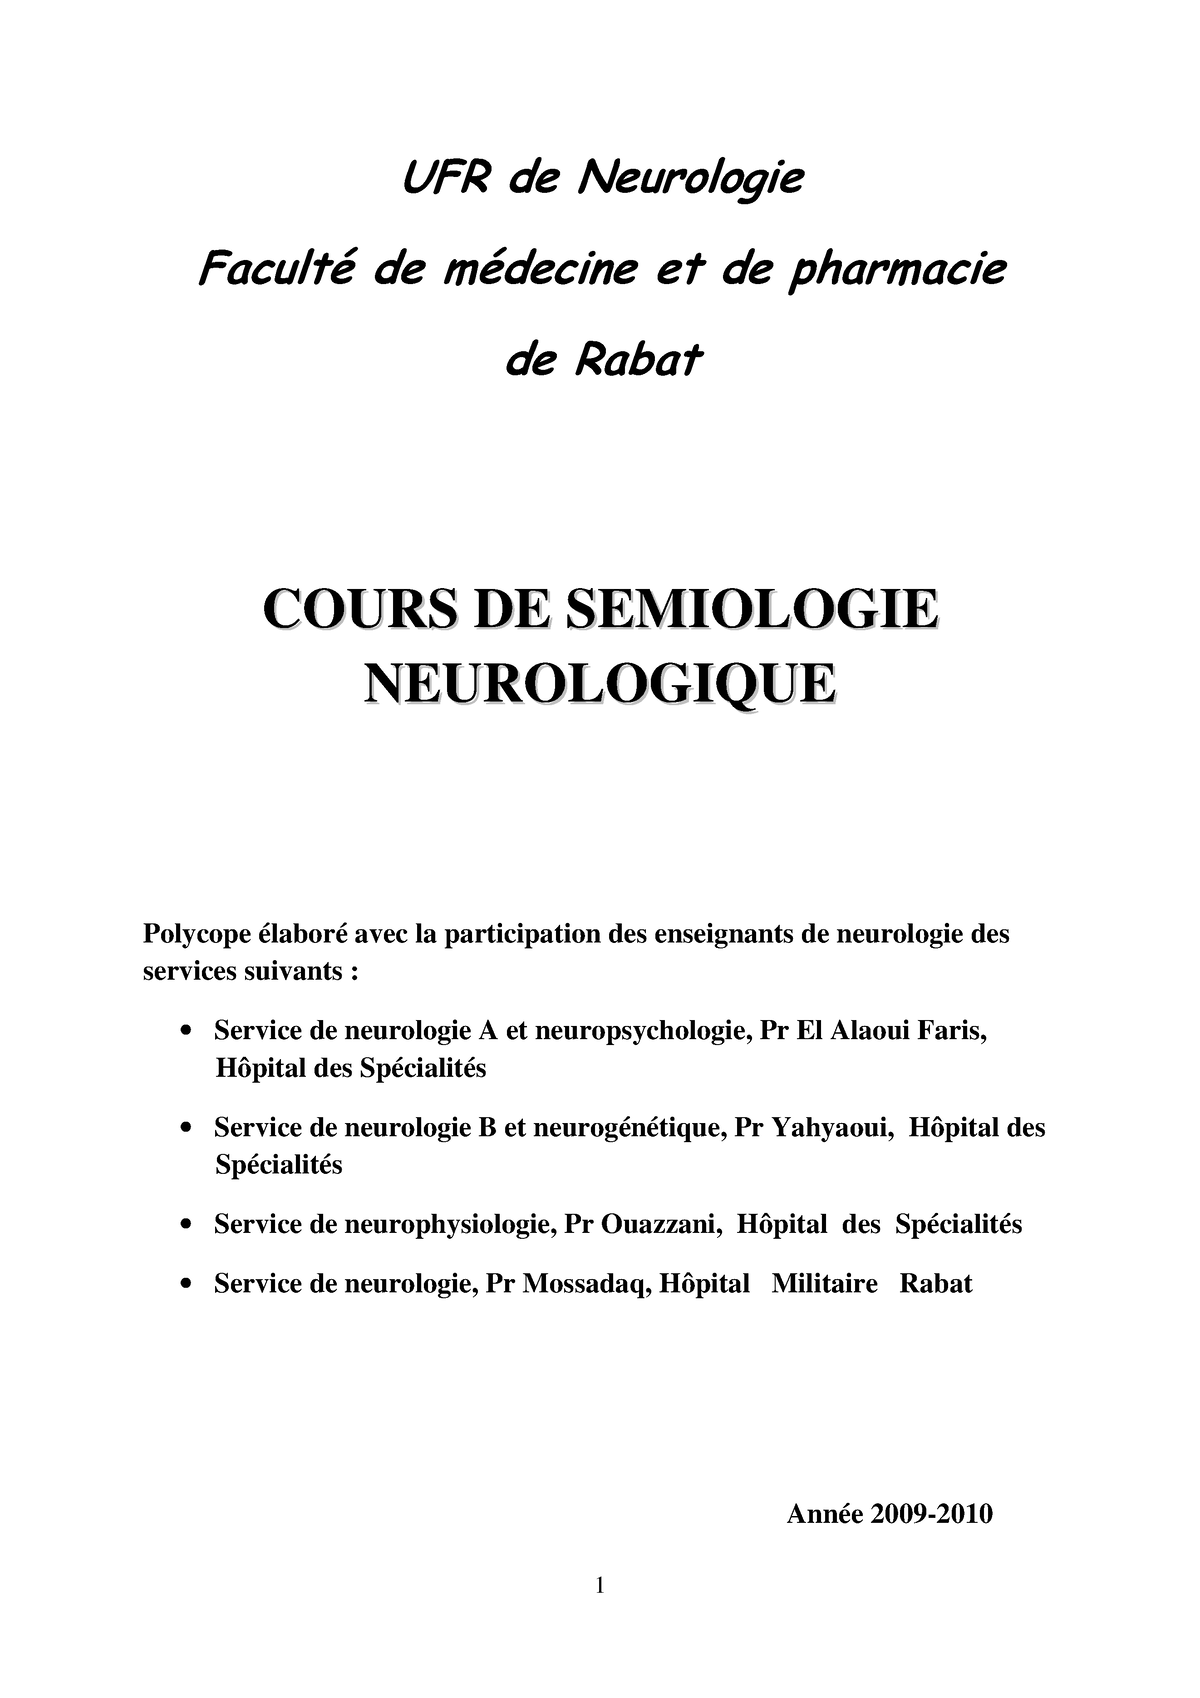 Marteau Réflexe Neurologique, Marteau Réflexe Médical Clinique, pour les  Réponses Superficielles Marteau Neurologique de Form